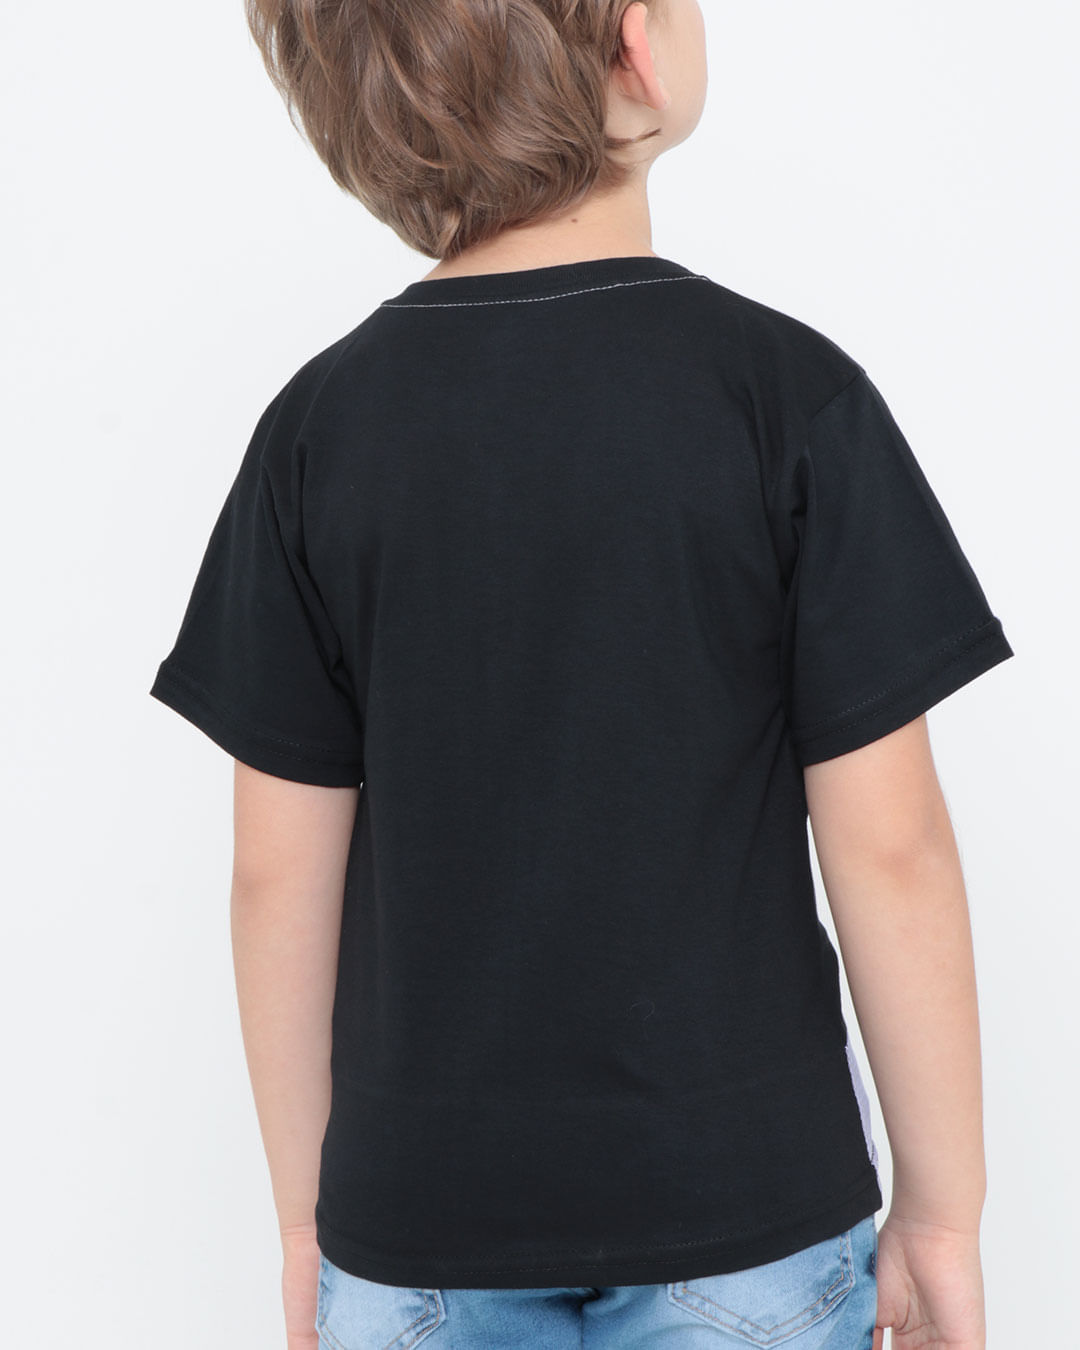 Camiseta-Infantil-Estampa-Athletic-Preta